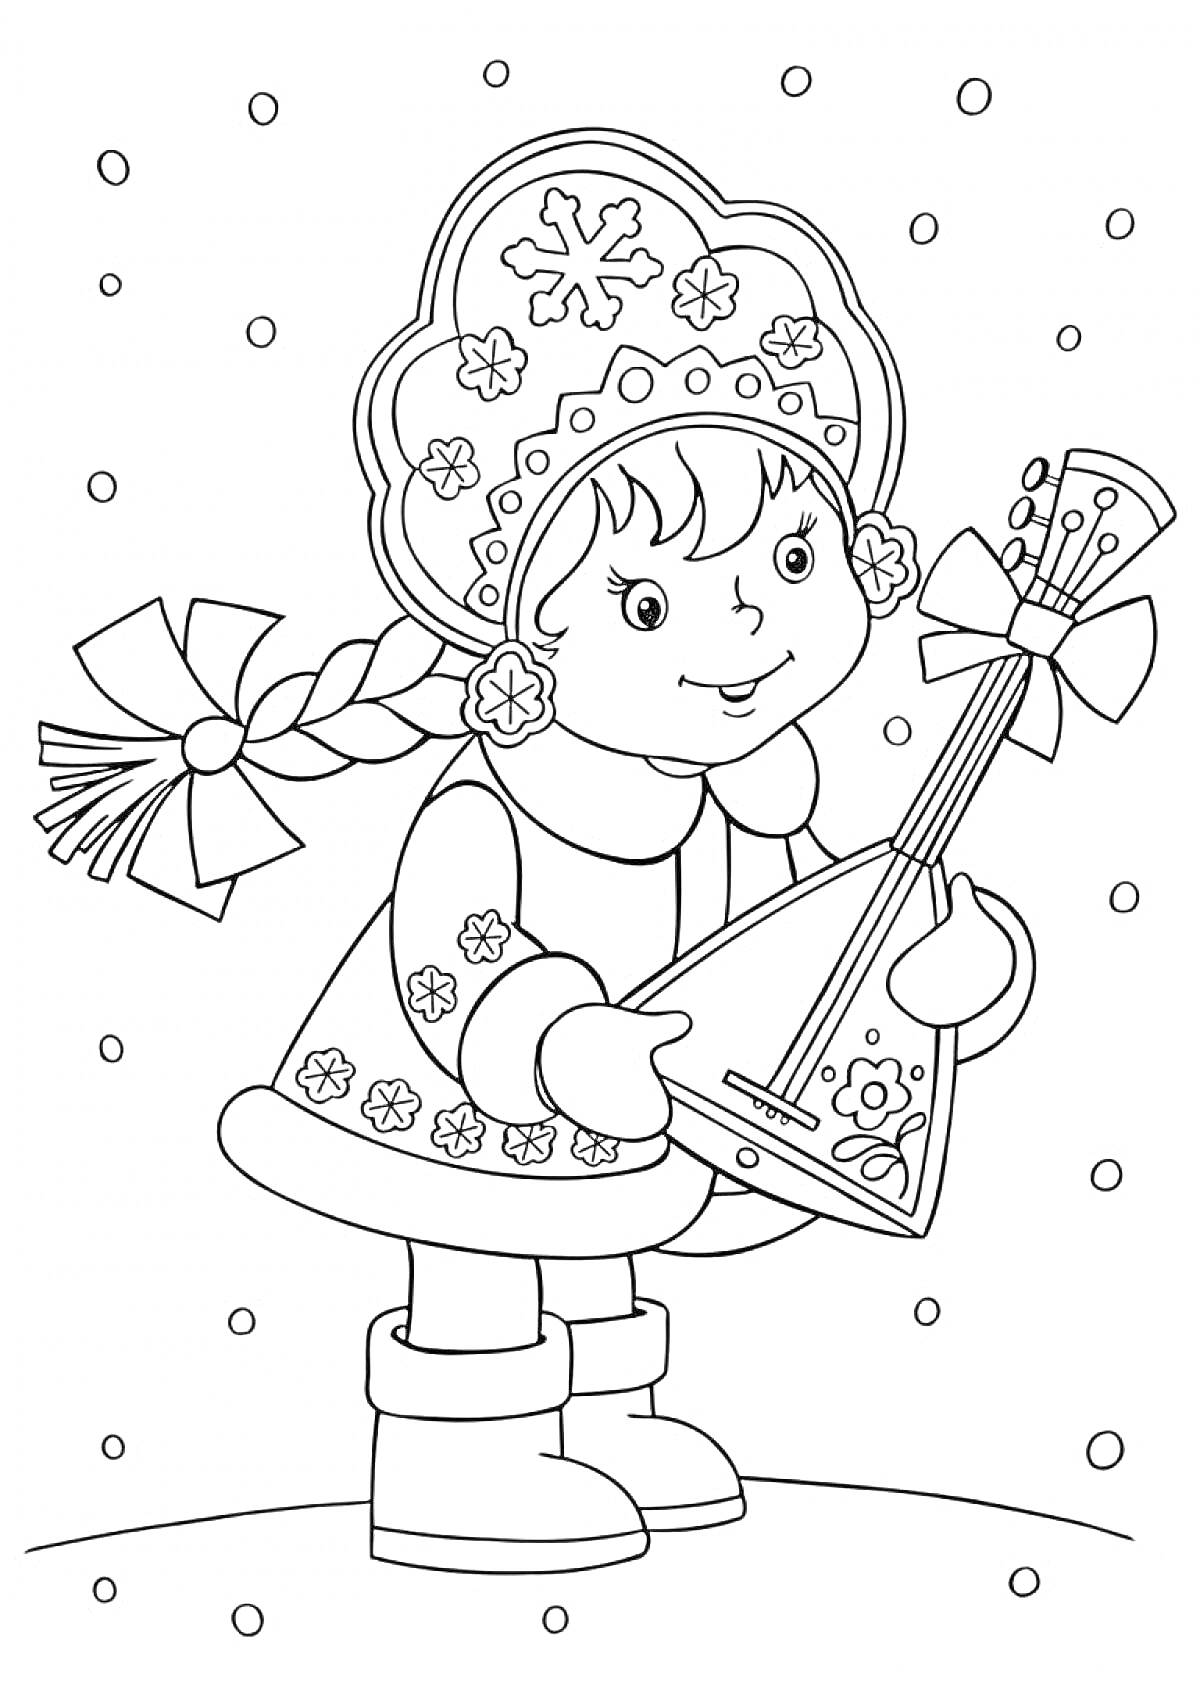 Раскраска Девочка-снегурочка с косичкой, держащая балалайку, на фоне падающих снежинок